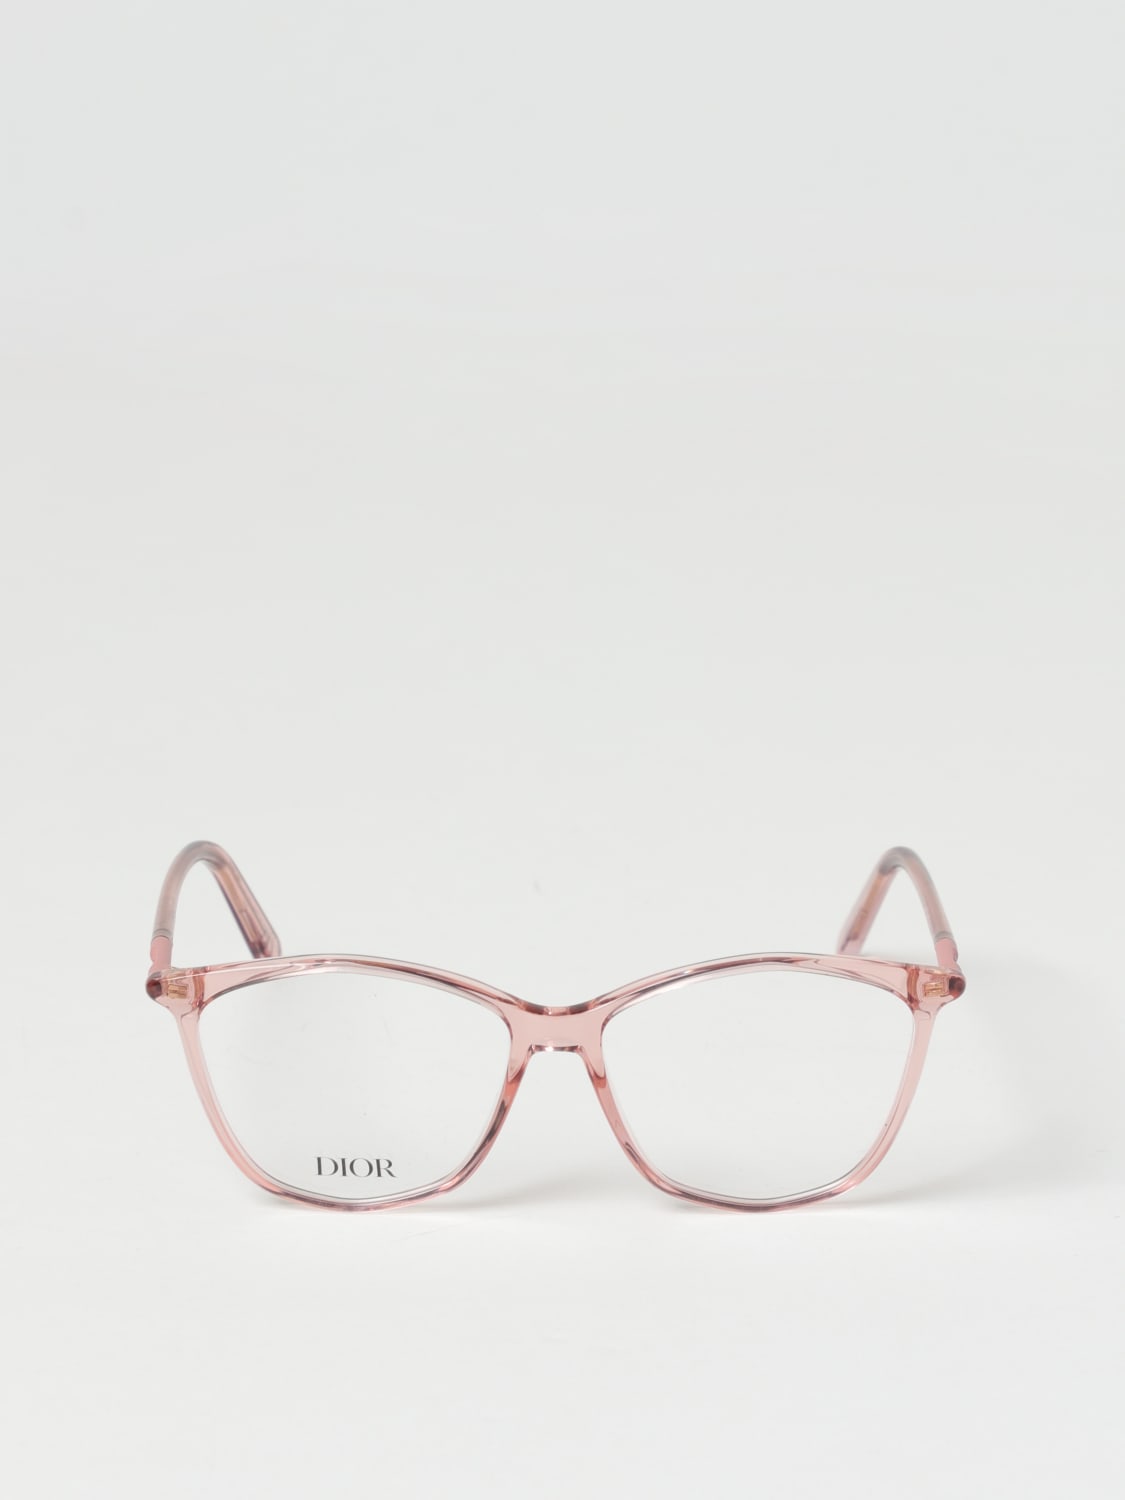 メガネ眼鏡めがねサングラスChristian Dior メガネフレーム 日本製 CD-7586J ピンク